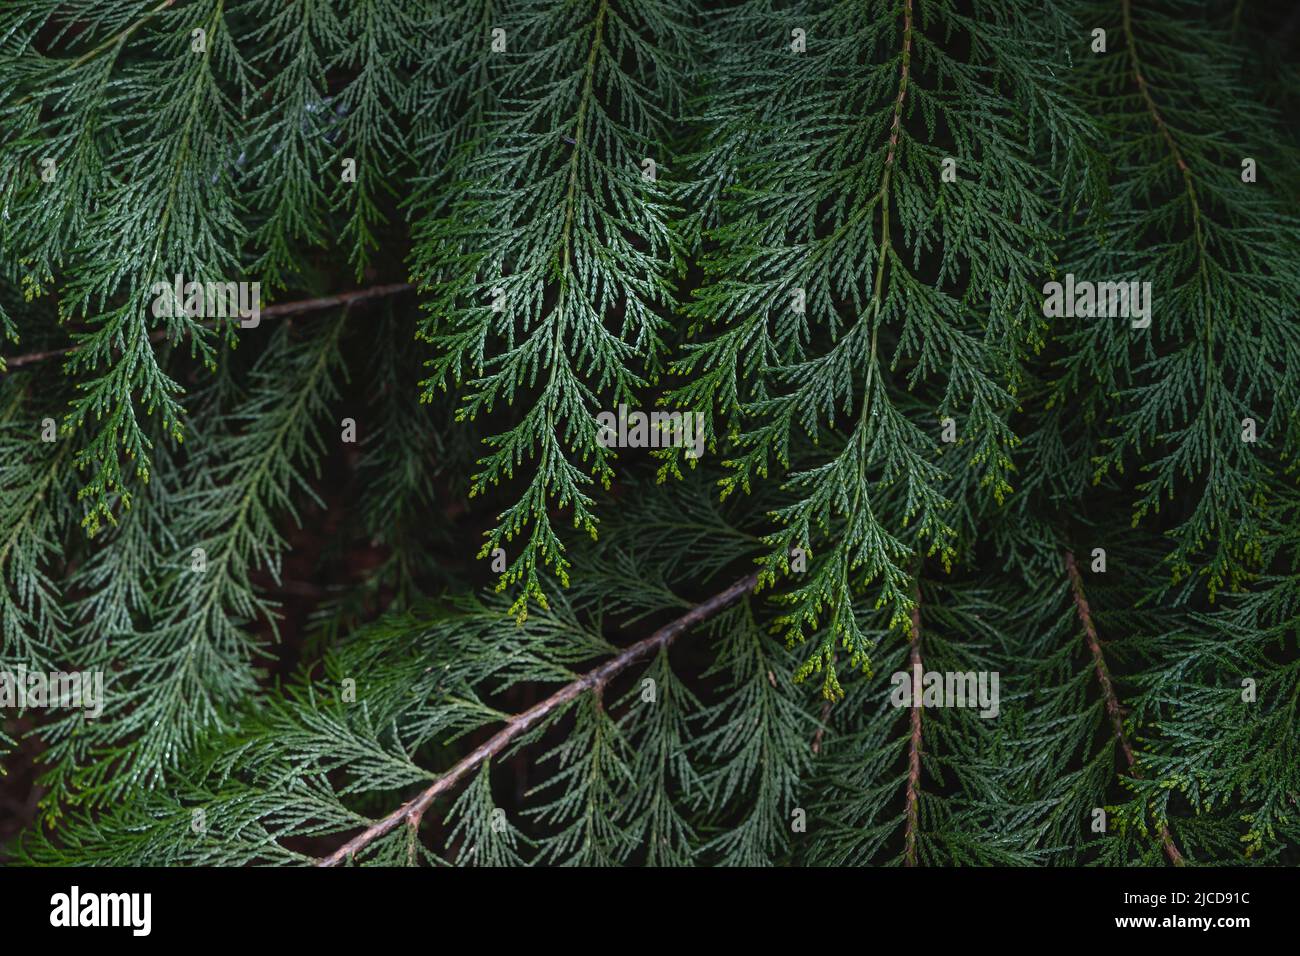 Lawson cypress (Chamaecyparis lawsoniana) evergreen foliage Stock Photo